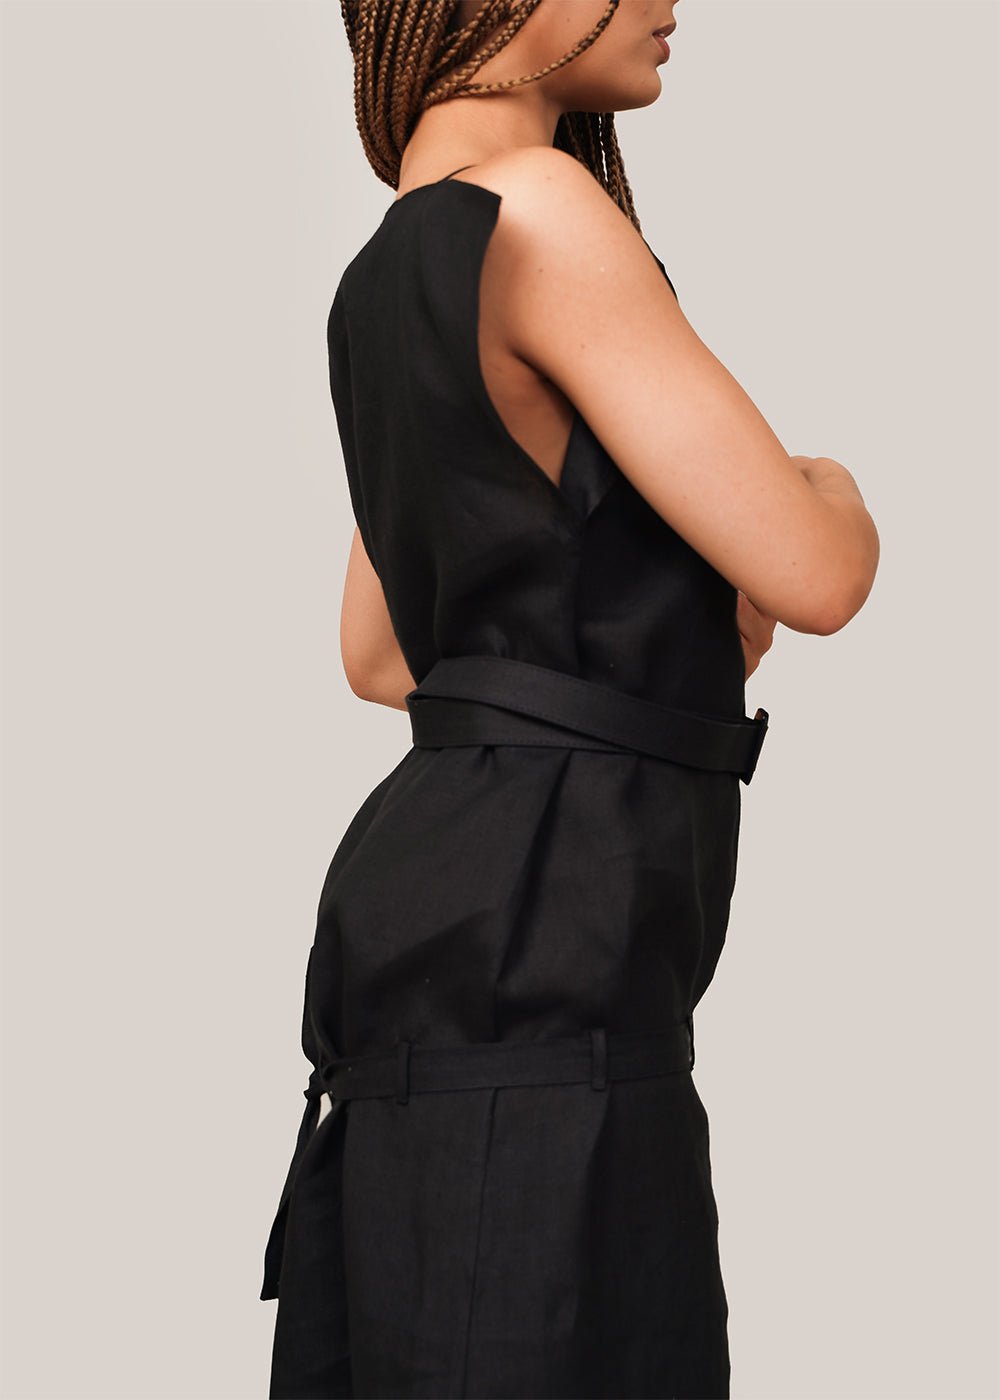 Baserange Black Leo Dress - New Classics Studios Sustainable Ethical Fashion Canada